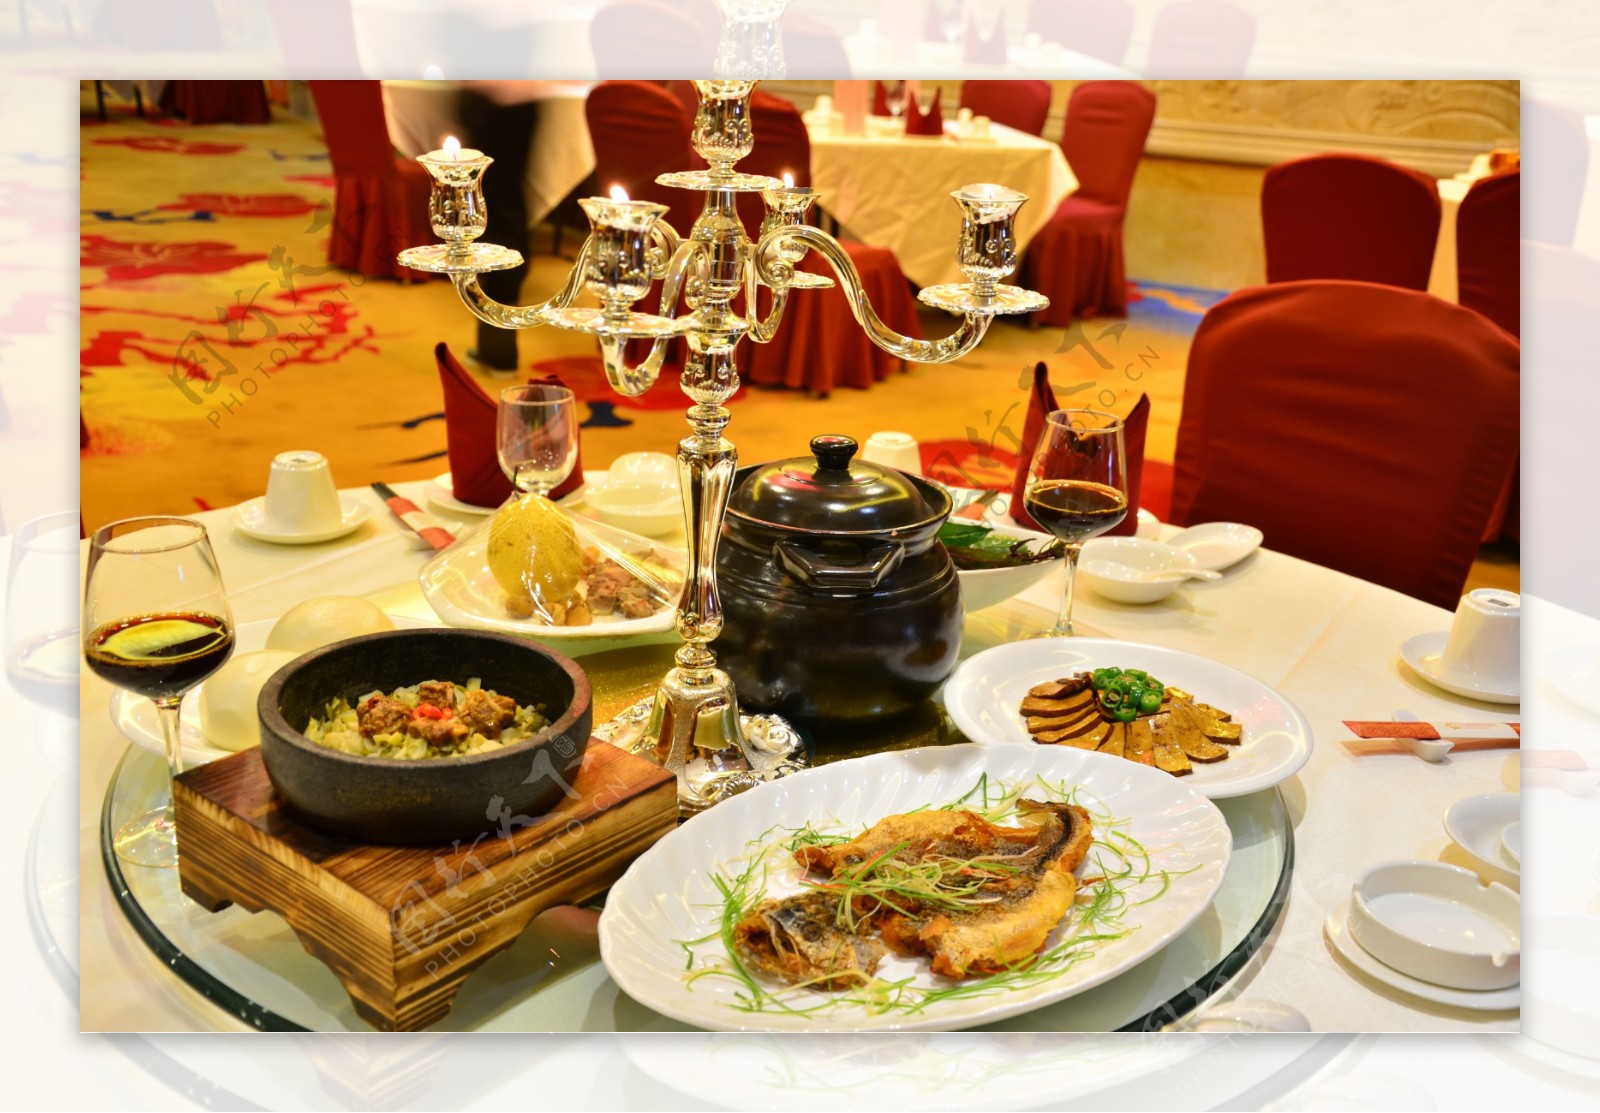 上海新天地朗廷酒店蝉联米其林三星食府唐阁呈献全新零点菜单及套餐